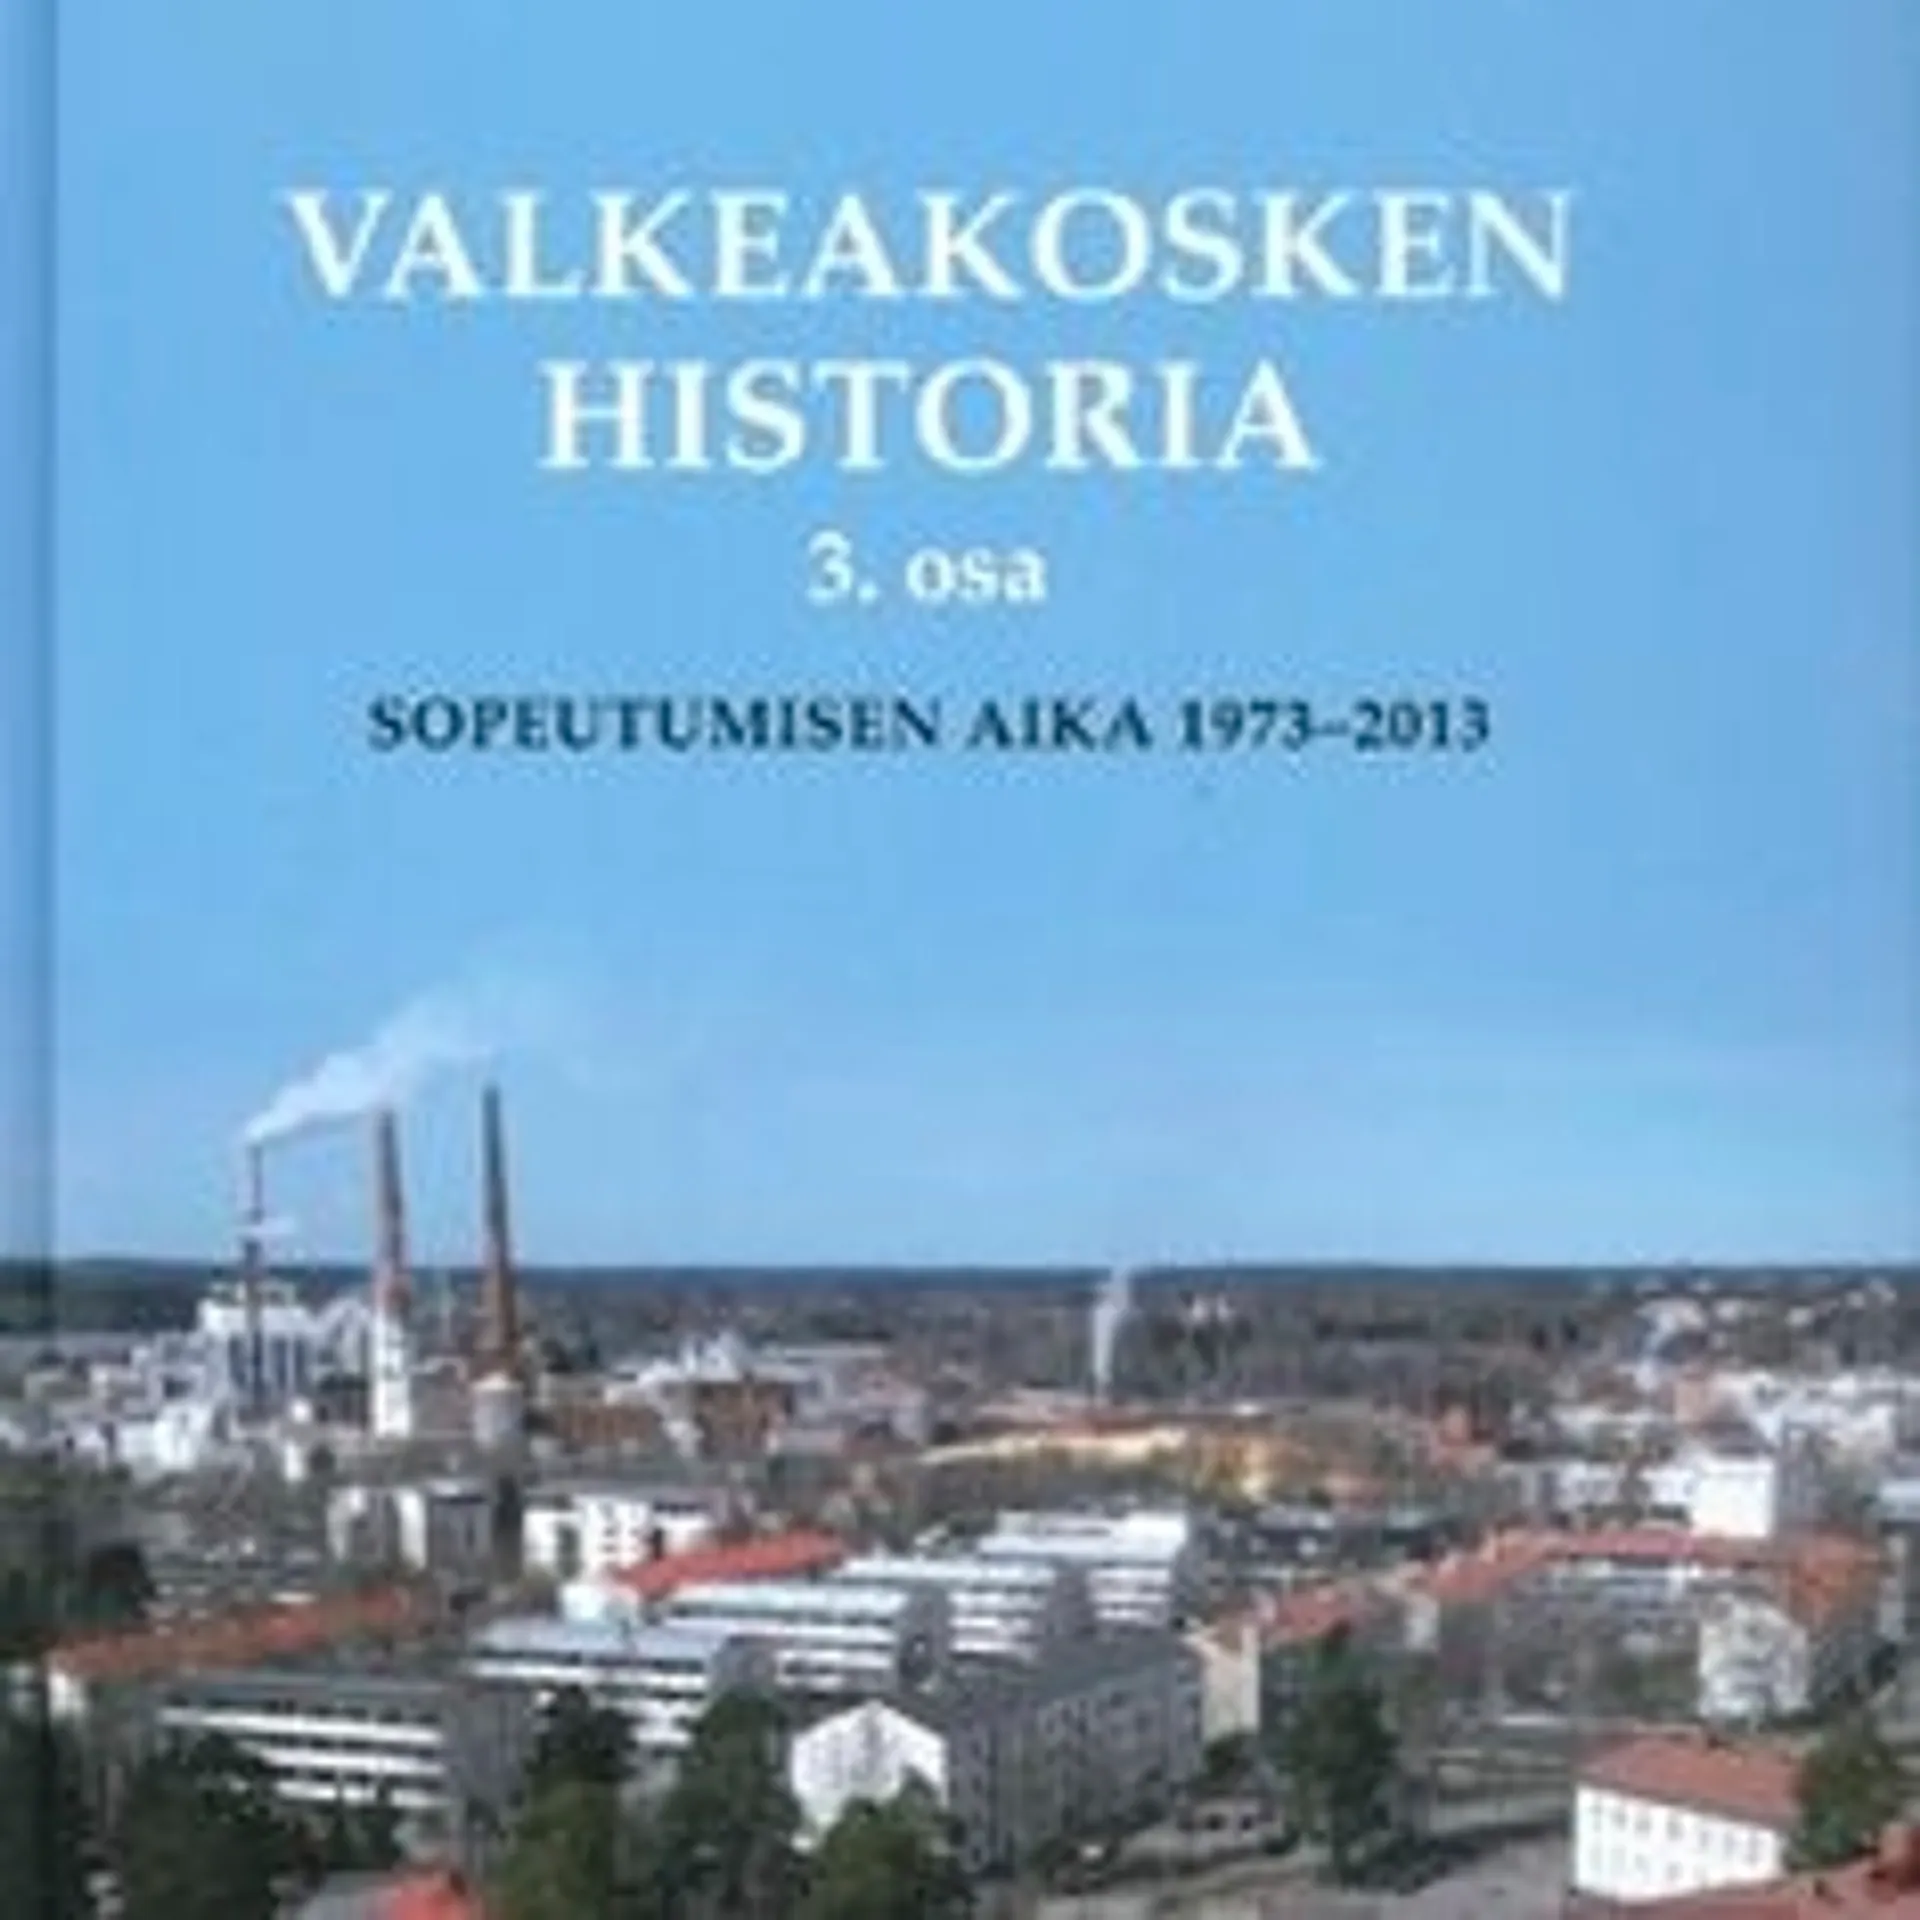 Leino-Kaukiainen, Valkeakosken historia 3. osa